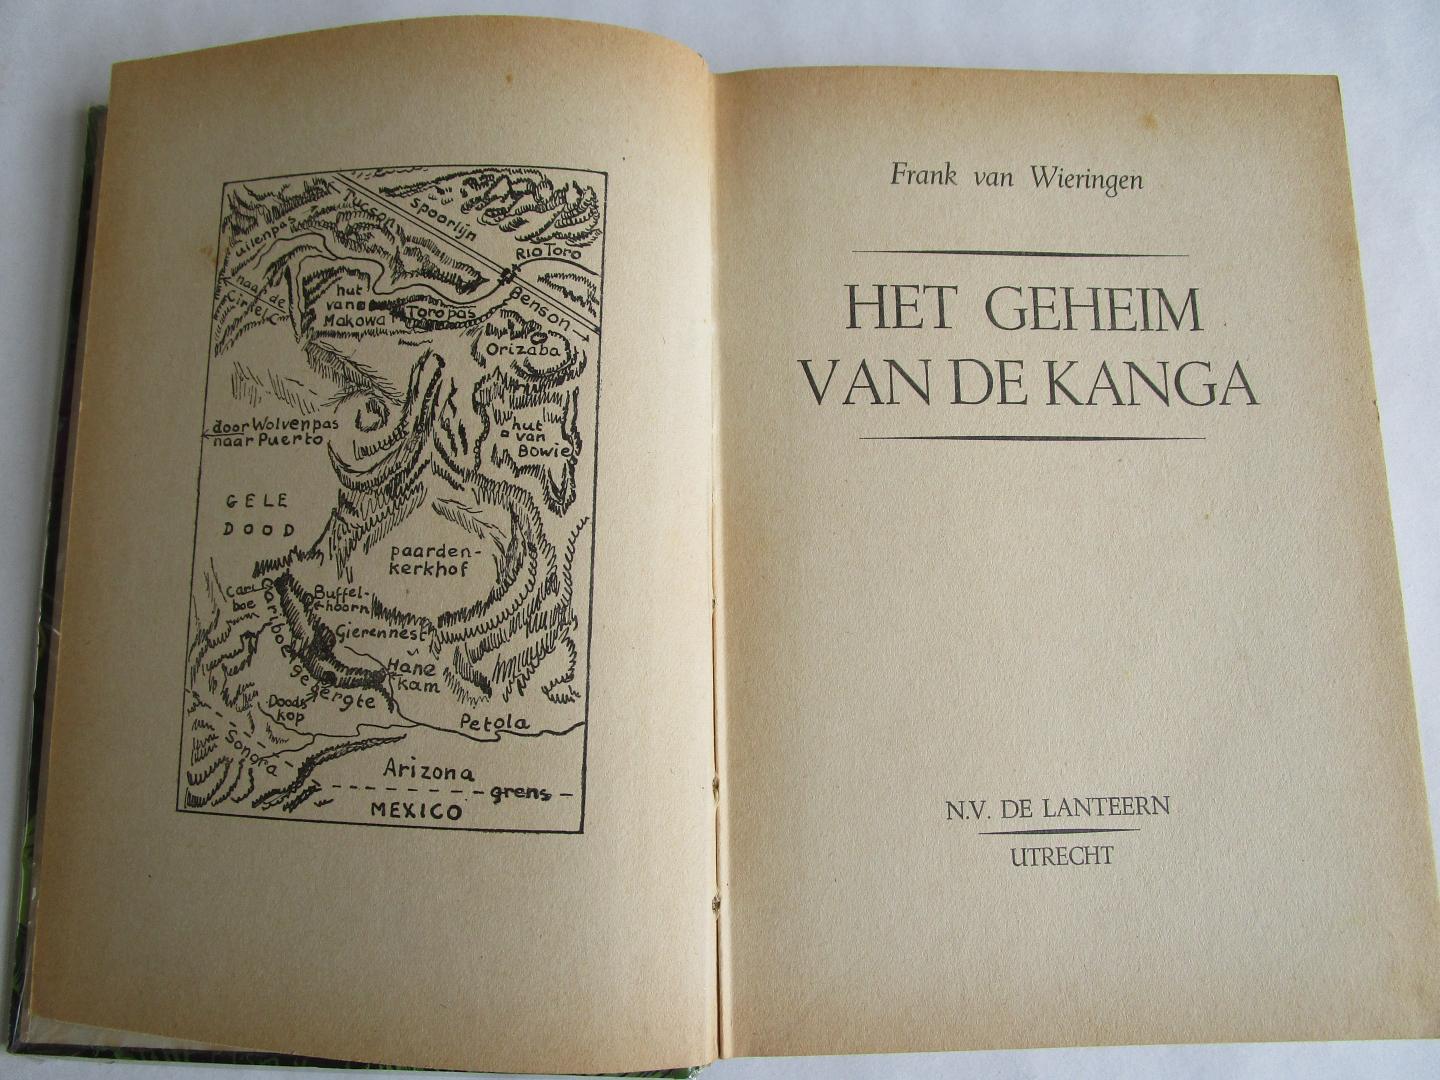 Wieringen, Frank van - Zilvergieren EN het geheim van de Kanga  (twee boeken; 1 verhaal)